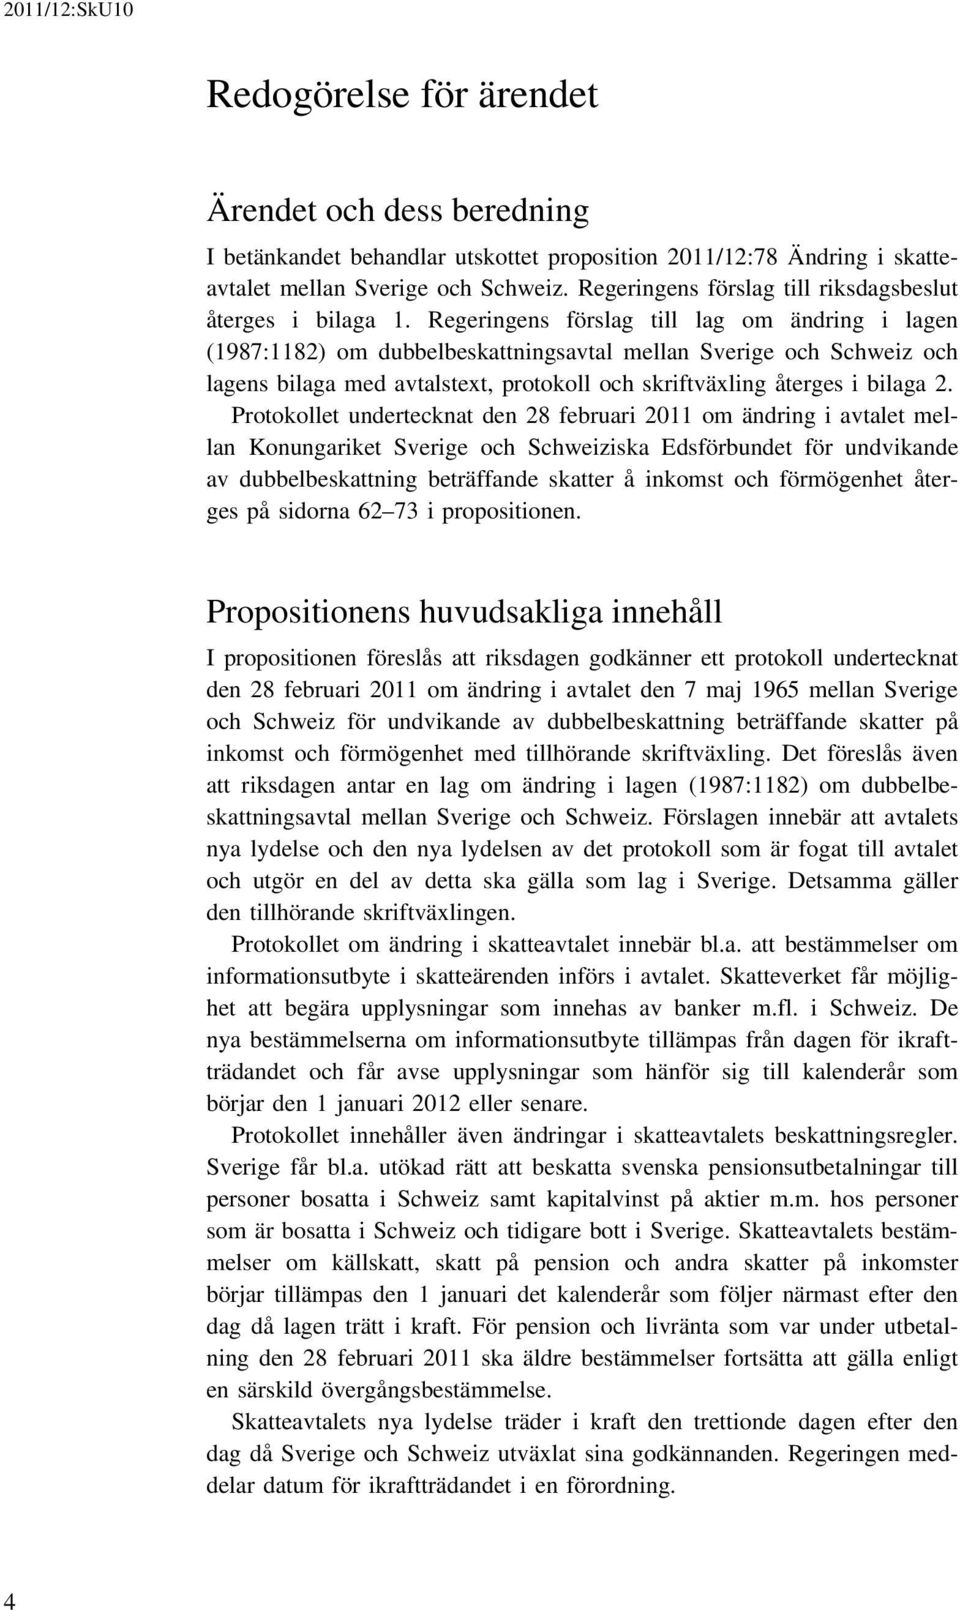 Regeringens förslag till lag om ändring i lagen (1987:1182) om dubbelbeskattningsavtal mellan Sverige och Schweiz och lagens bilaga med avtalstext, protokoll och skriftväxling återges i bilaga 2.